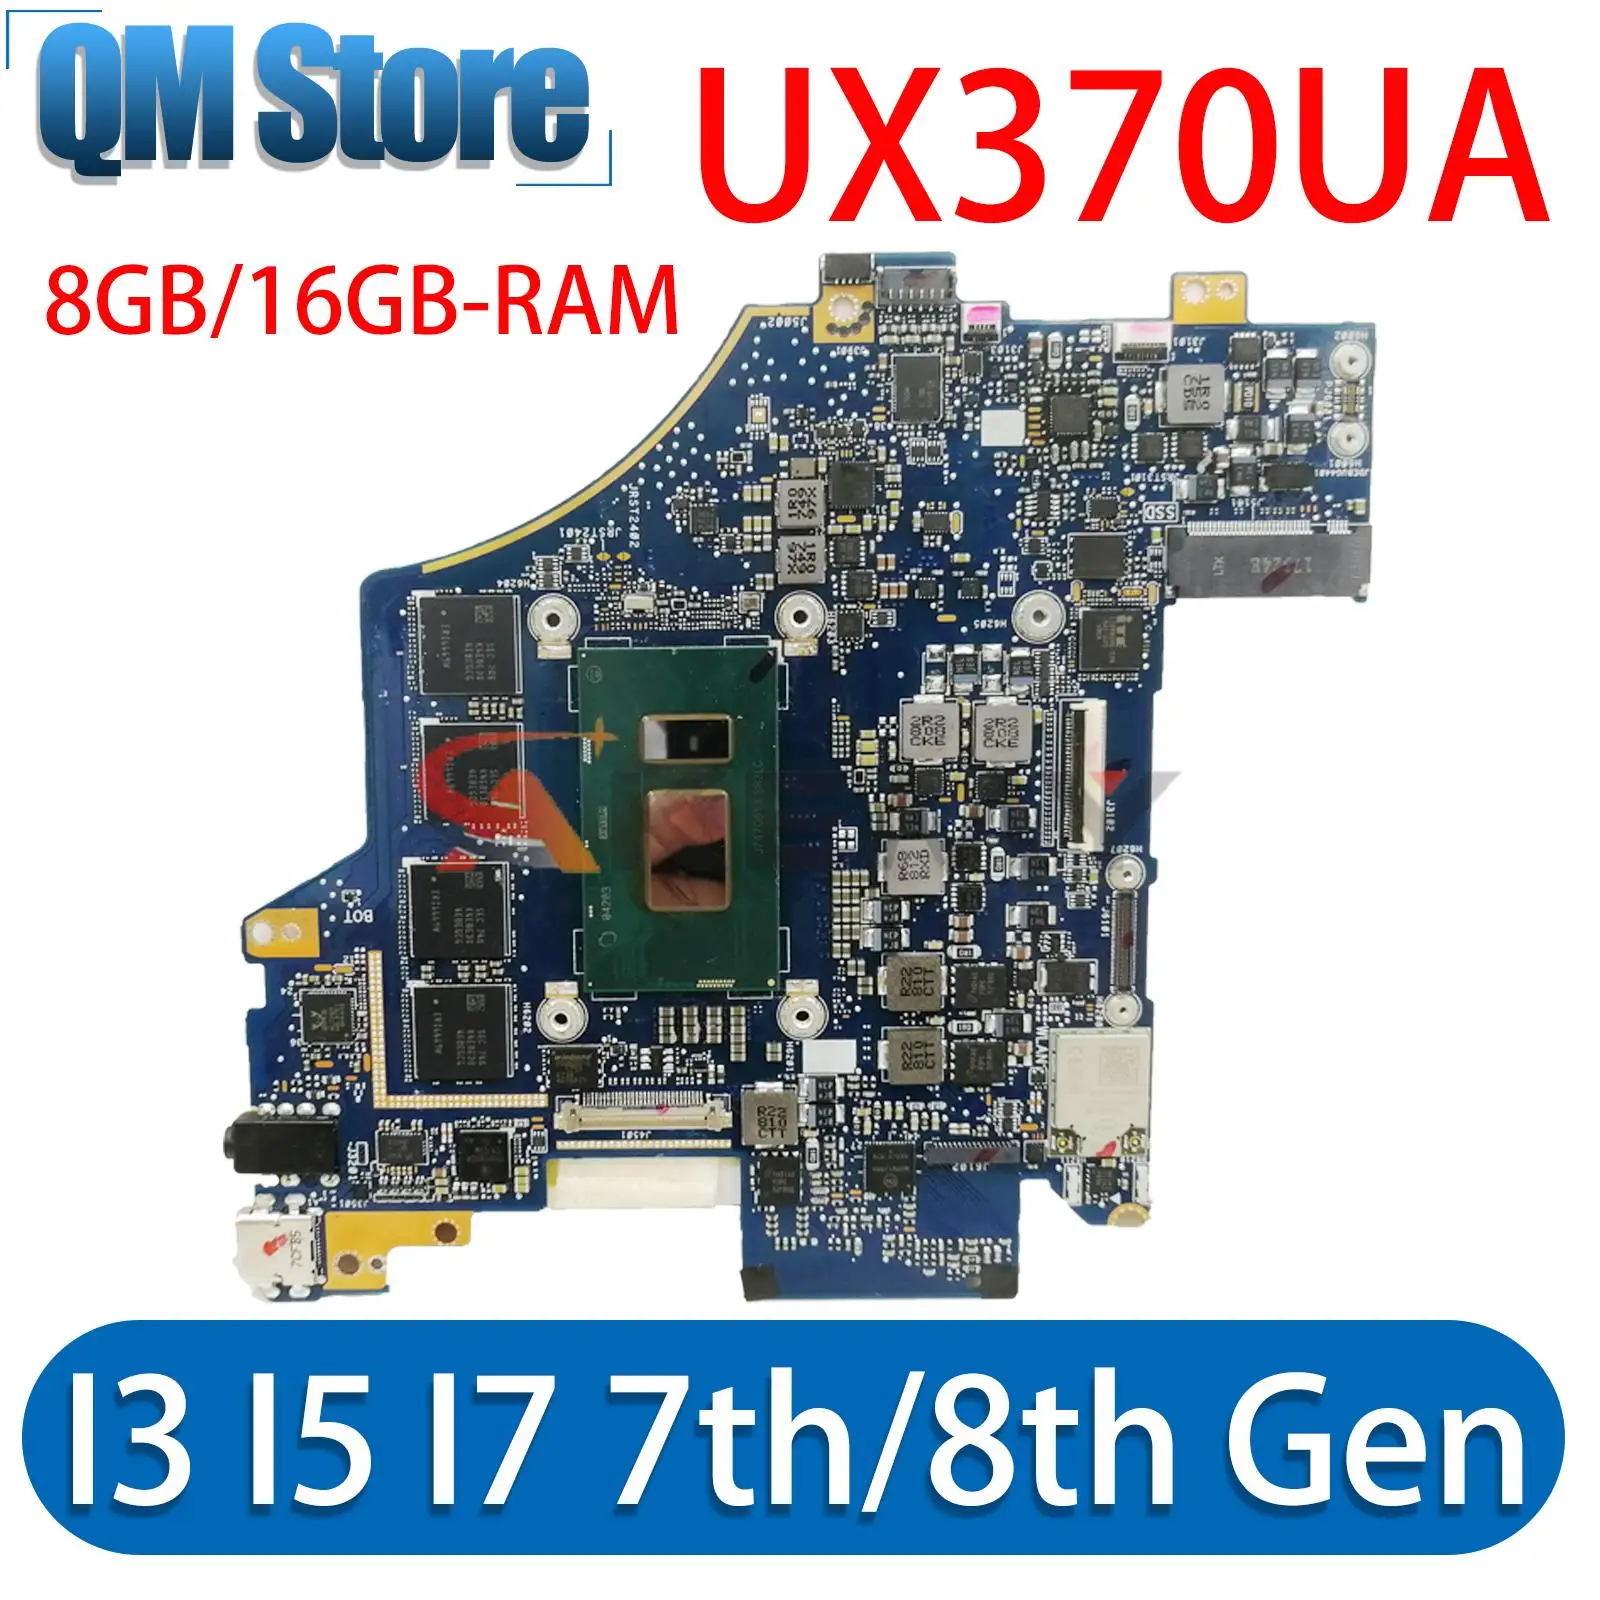 

UX370U Mainboar For ASUS Zenbook Flip S UX370 UX370UAR UX370UAF UX370UA Q325UAR Laptop Motherboard I3 I5 I7 7th/8th Gen 8G/16G